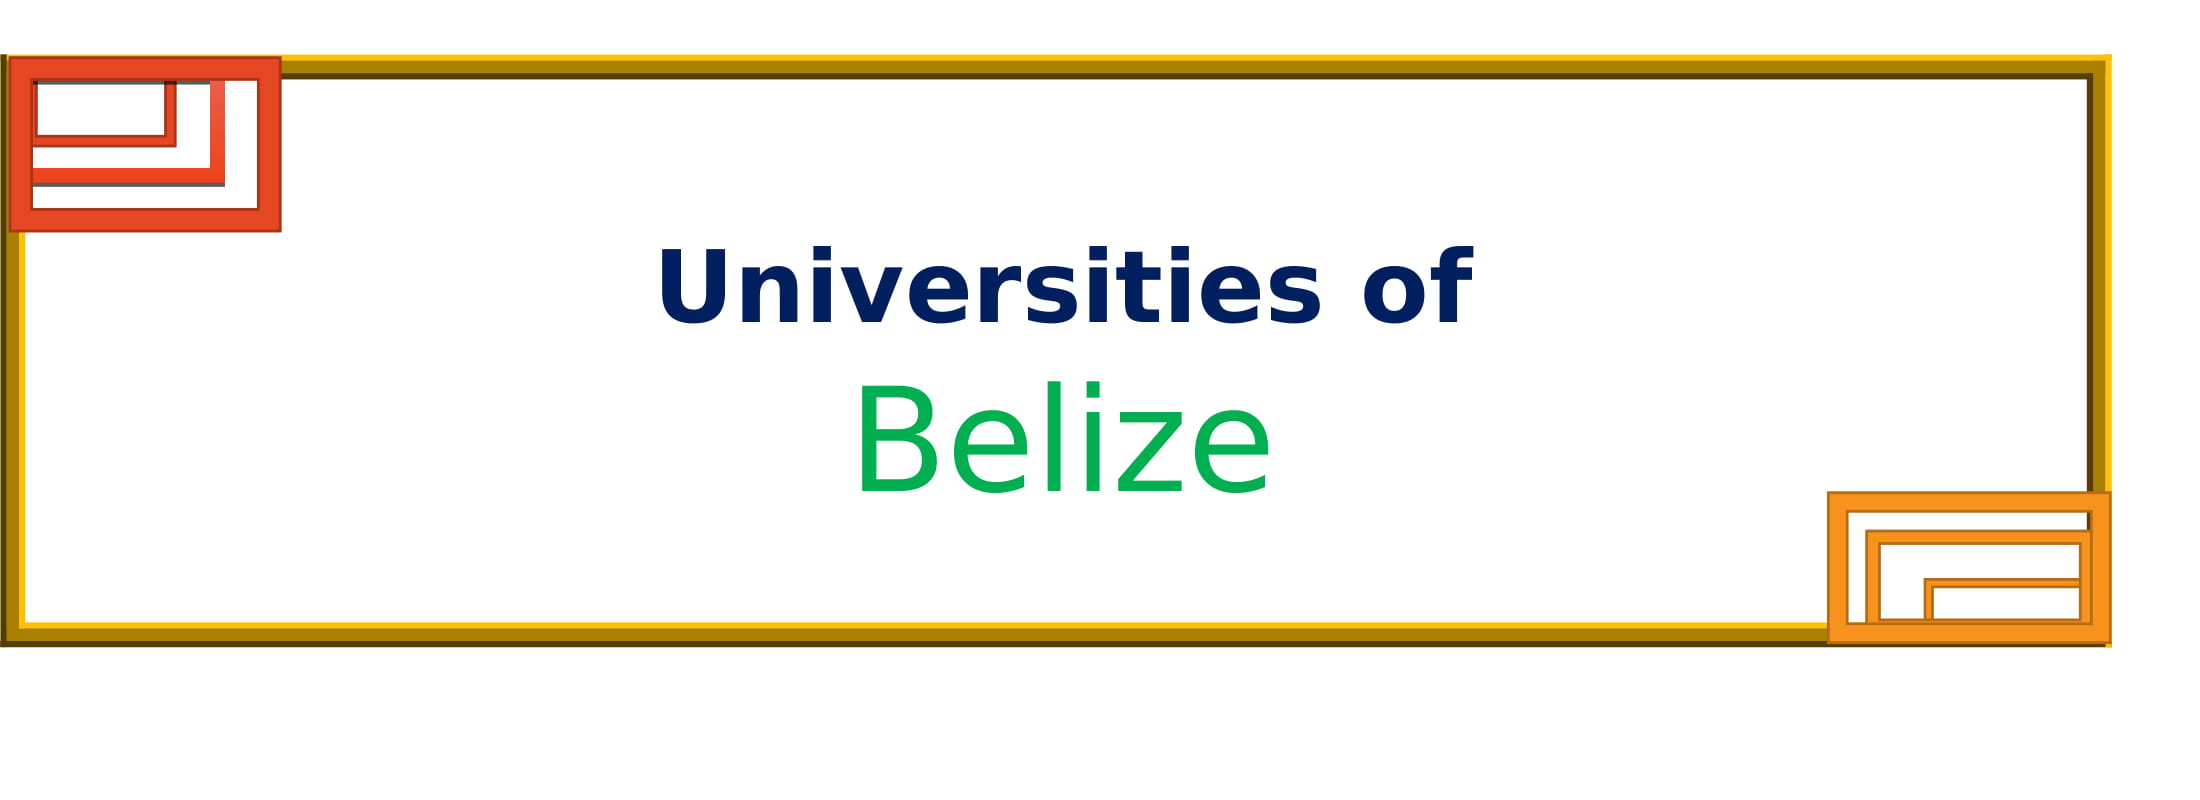 List of Universities in Belize